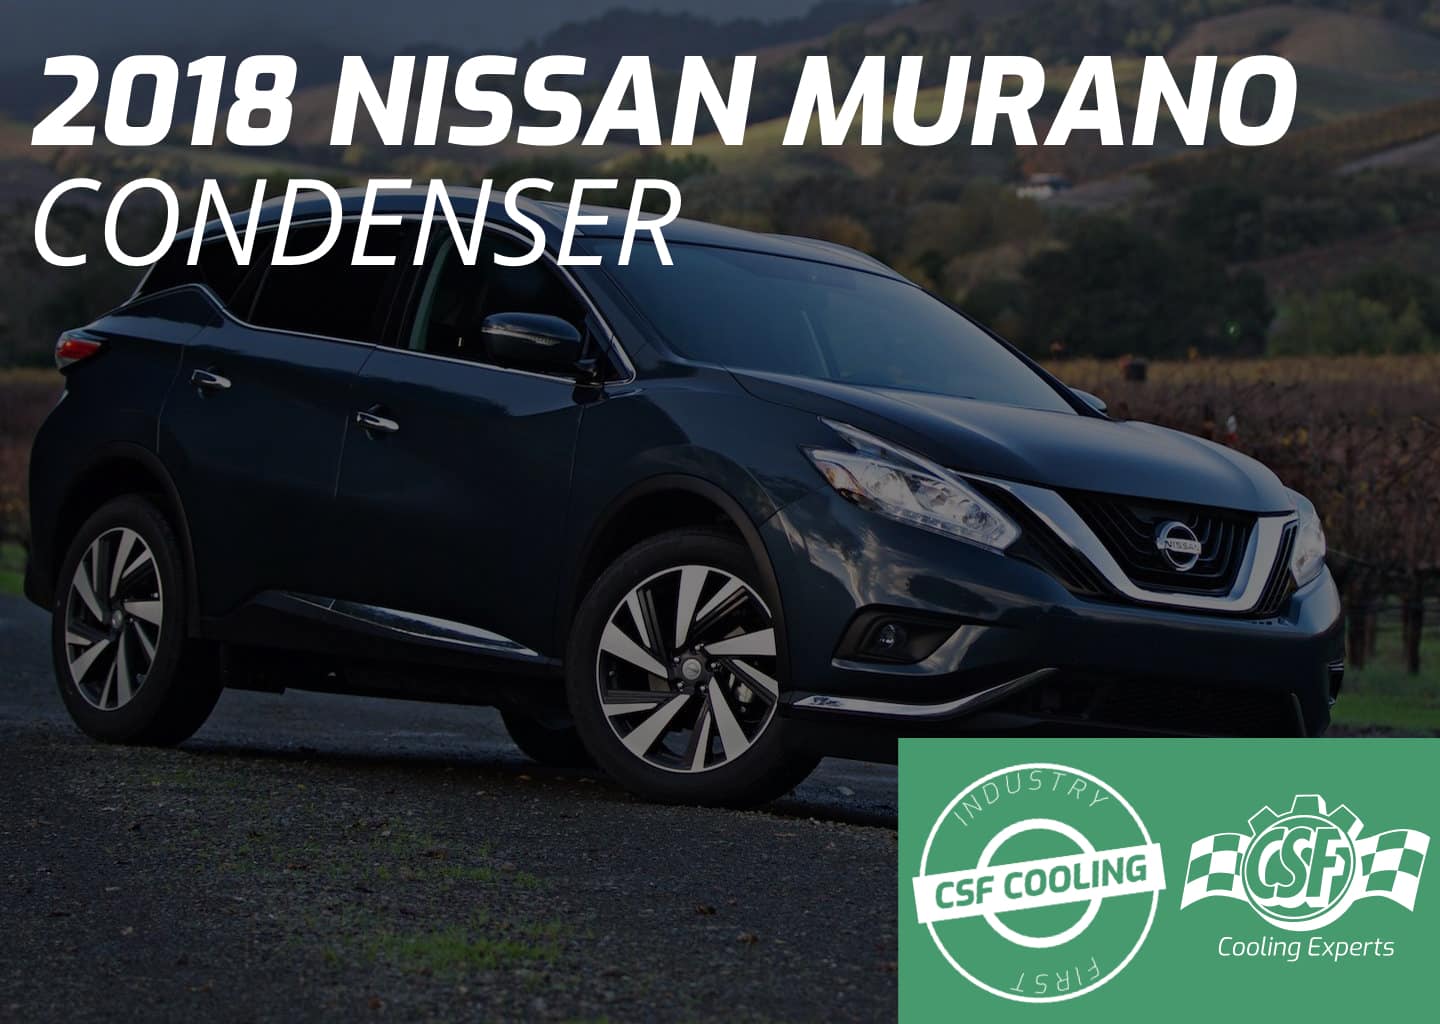 2018 Nissan Murano Condenser